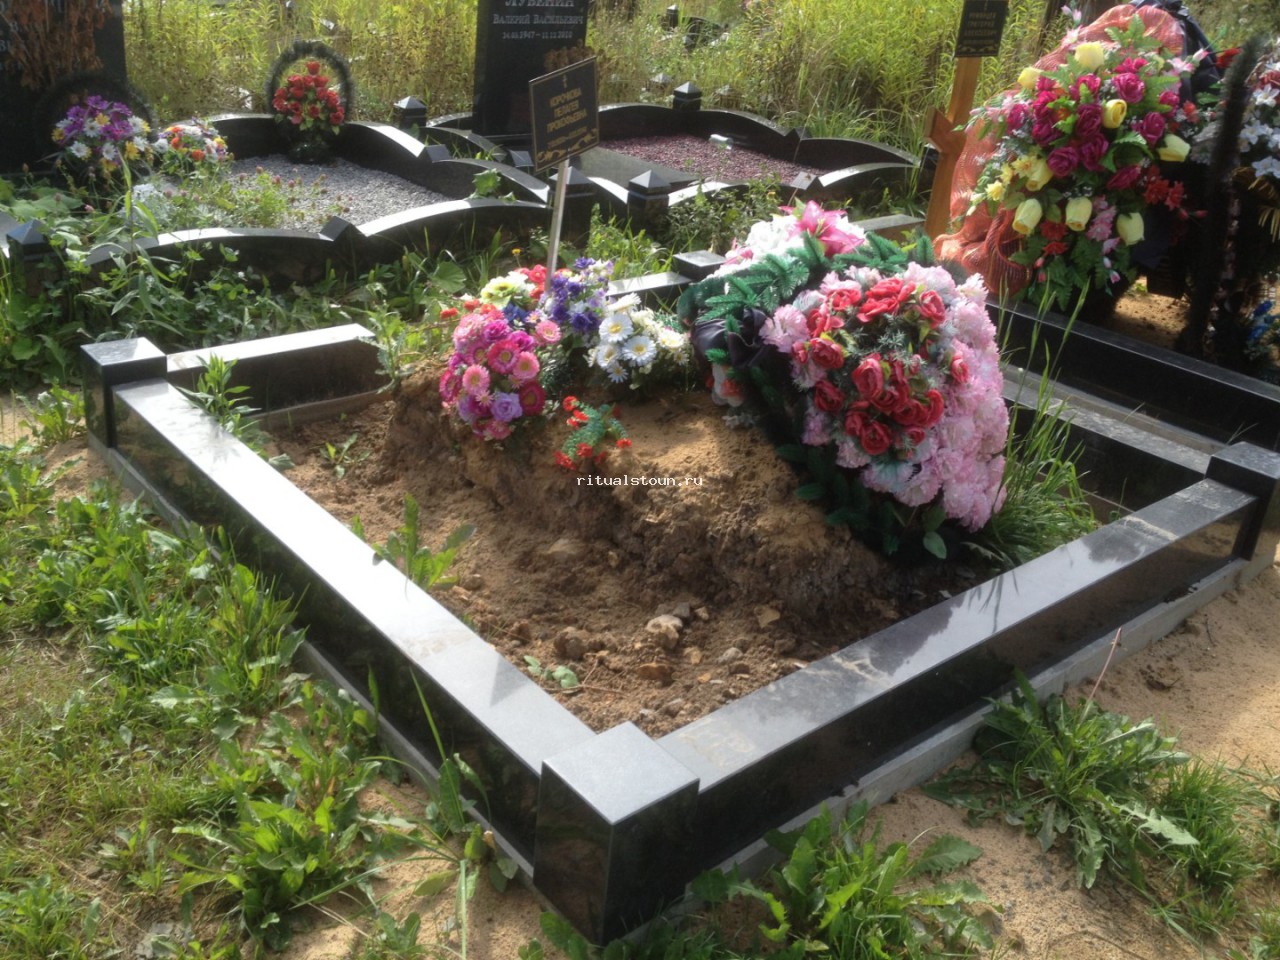 Статья можно ли брать с собой ребенка на кладбище?